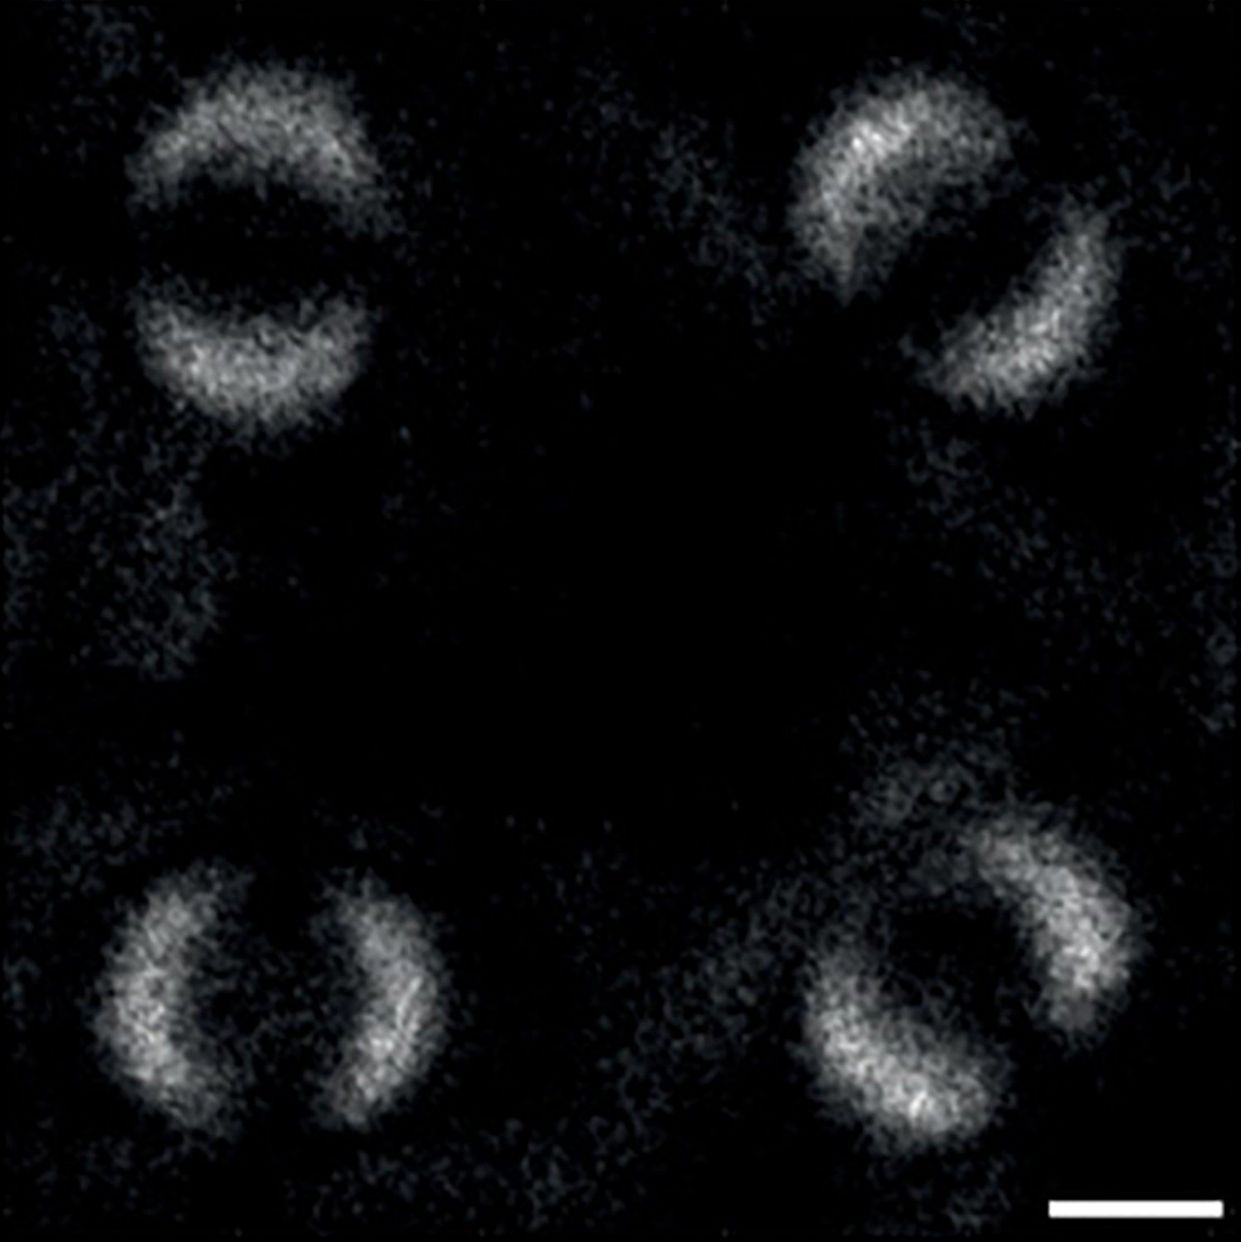 Primeras imágenes del entrelazamiento cuántico de dos fotones: ambos parecen reflejarse entre sí y forman una especie de anillo. Foto: Paul-Antoine Moreau et al./Science Advances.